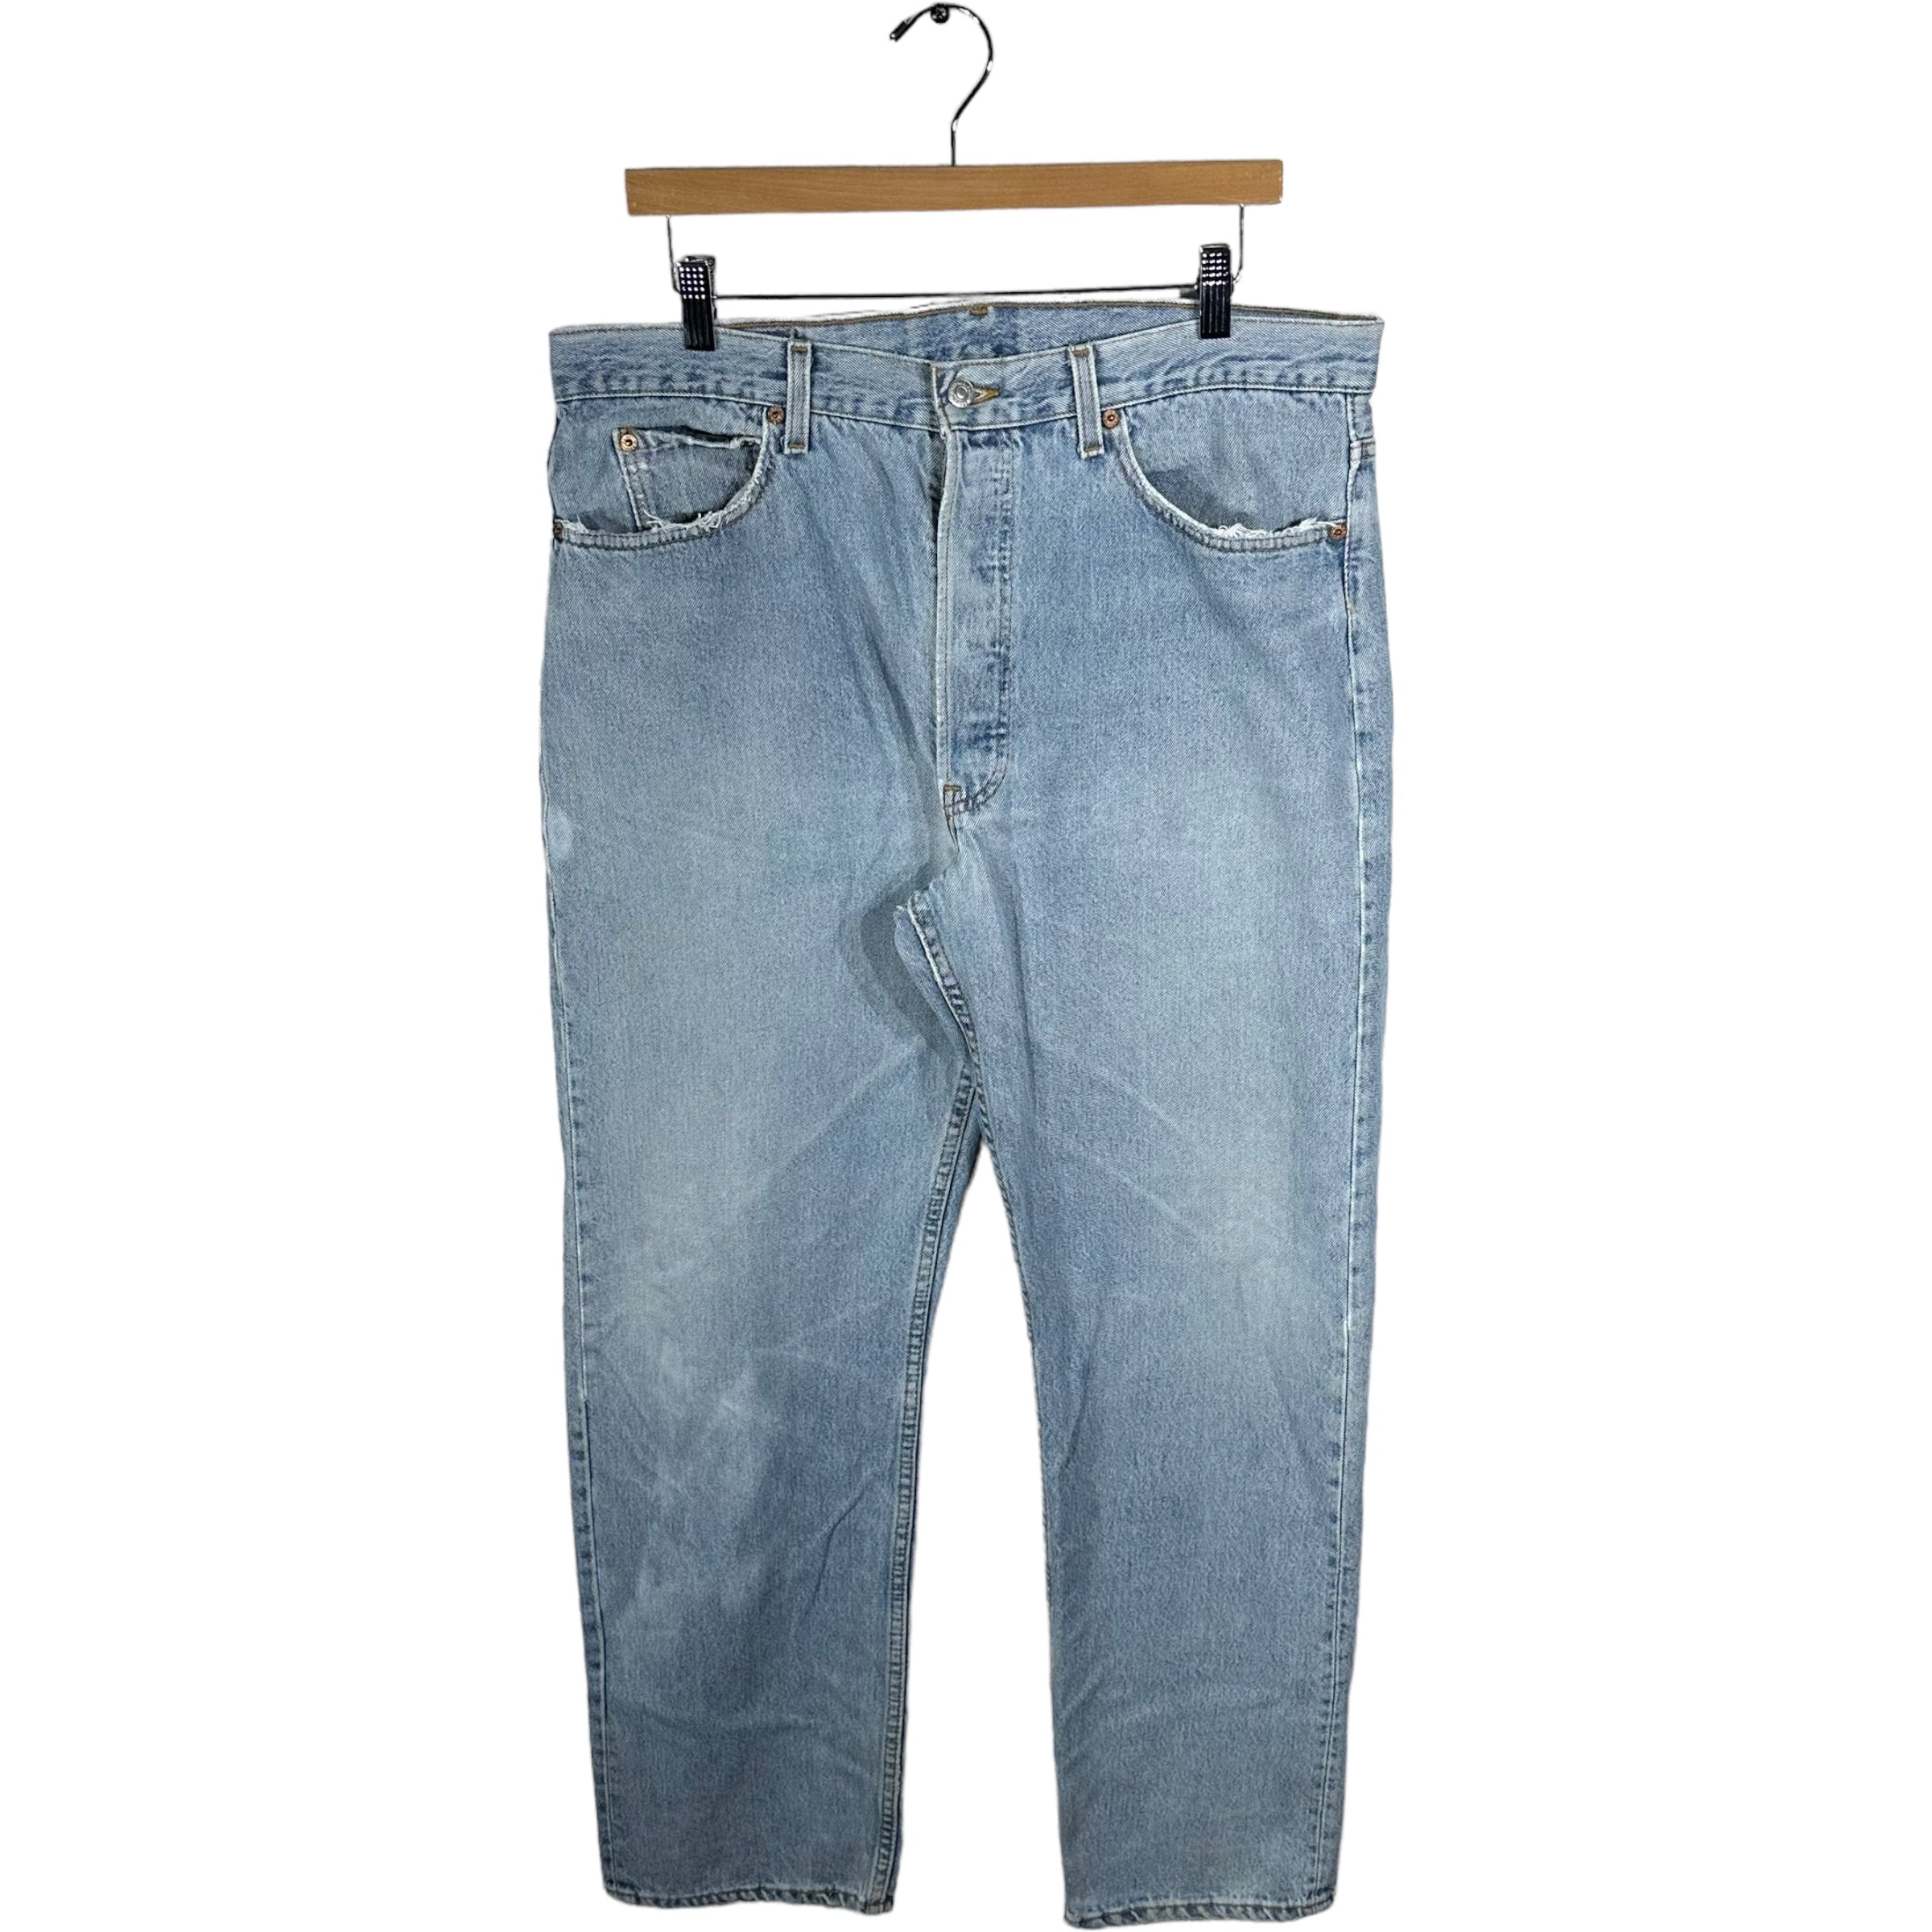 Vintage Levis 501 Denim Jeans